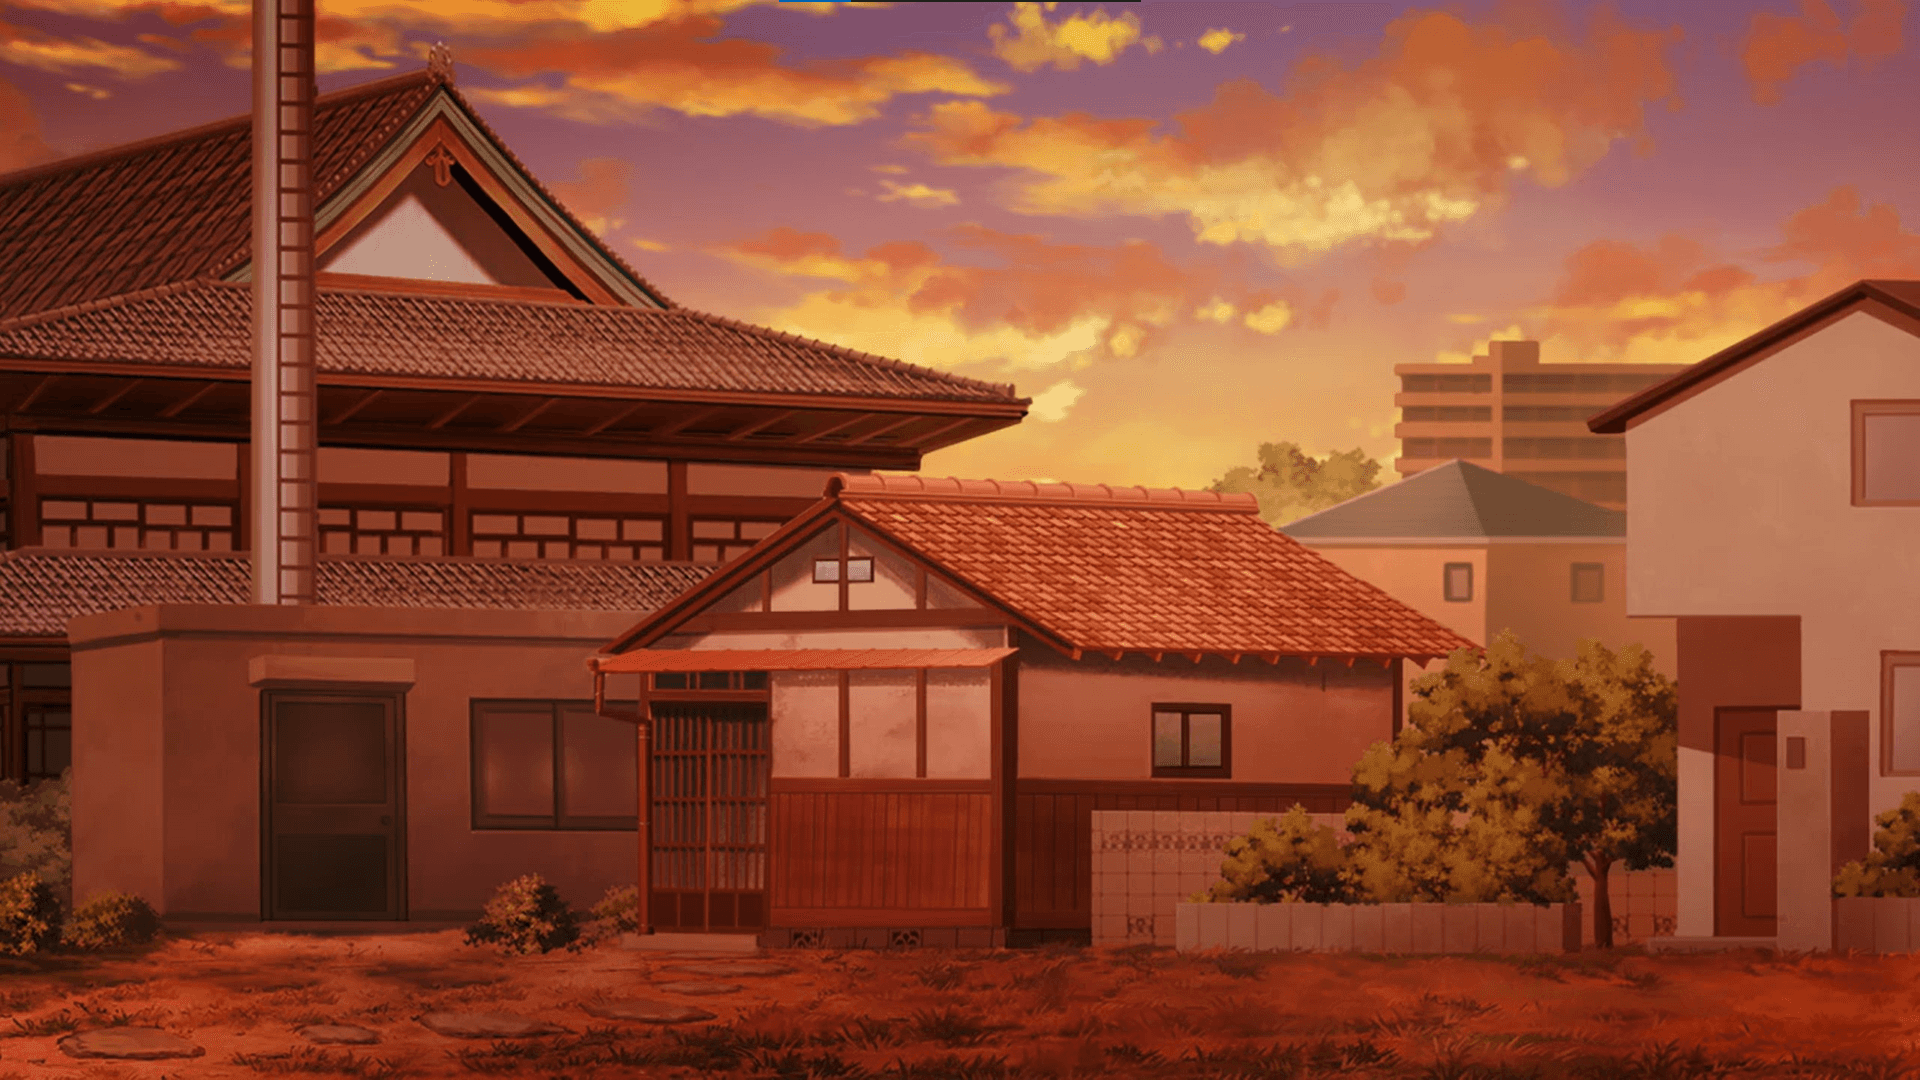 Einblick Von Oben: Ein Wunderschöner Anime-himmel Als Hintergrund